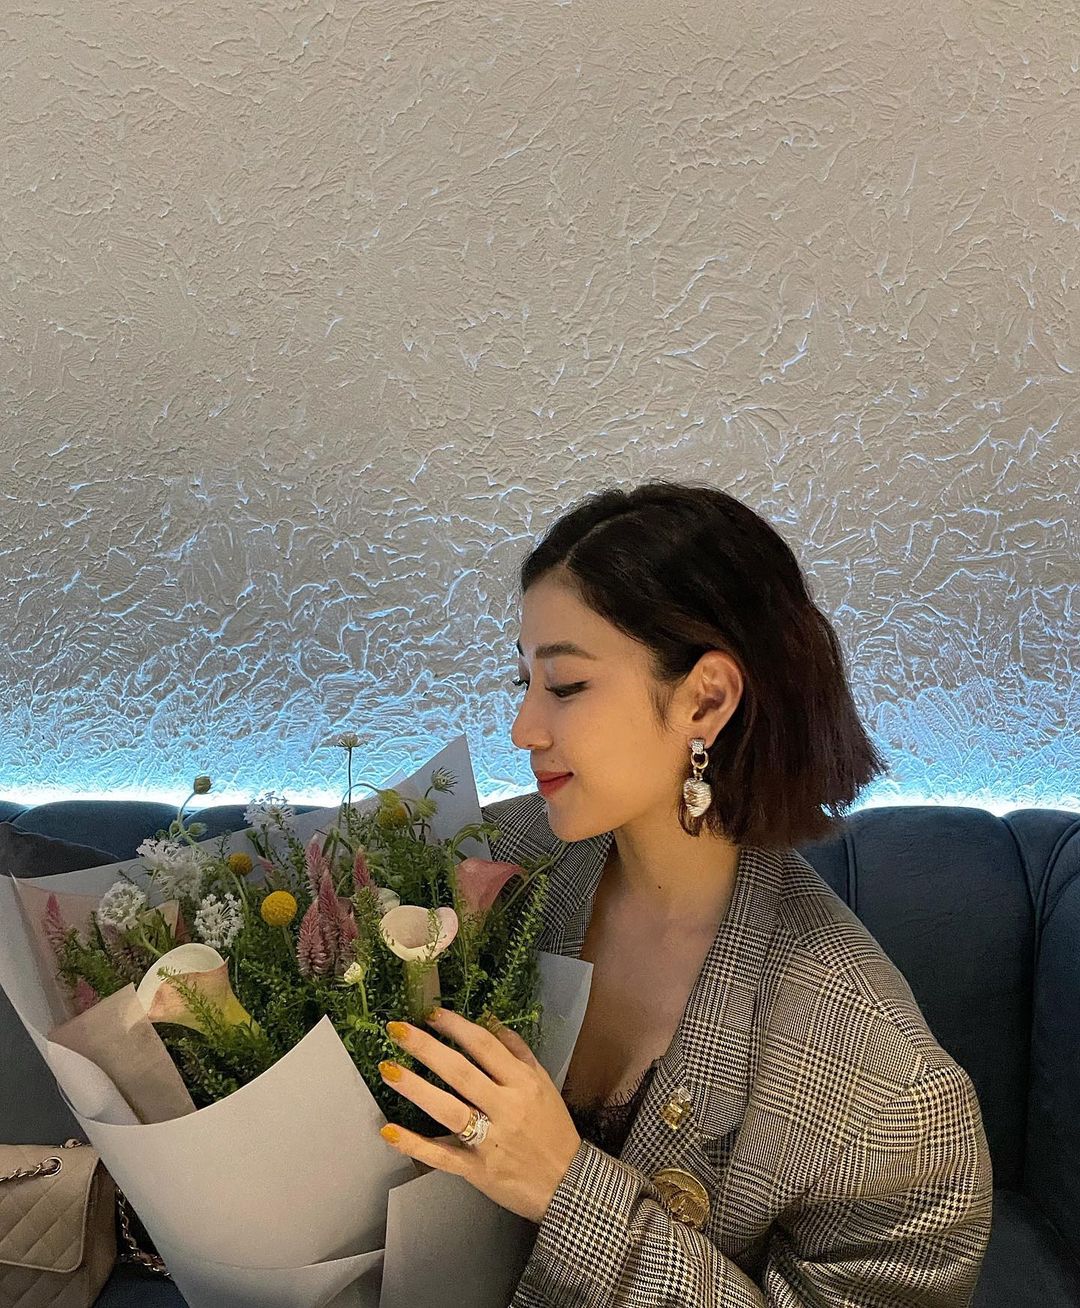 MC Yumi Dương nhận bó hoa lãng mạn từ ông xã nhân kỷ niệm 7 năm yêu nhau. Sau khi kết hôn, nữ MC không tham gia quá nhiều hoạt động giải trí, dù vậy cô vẫn giữ được sắc vóc xinh đẹp, rạng rỡ.